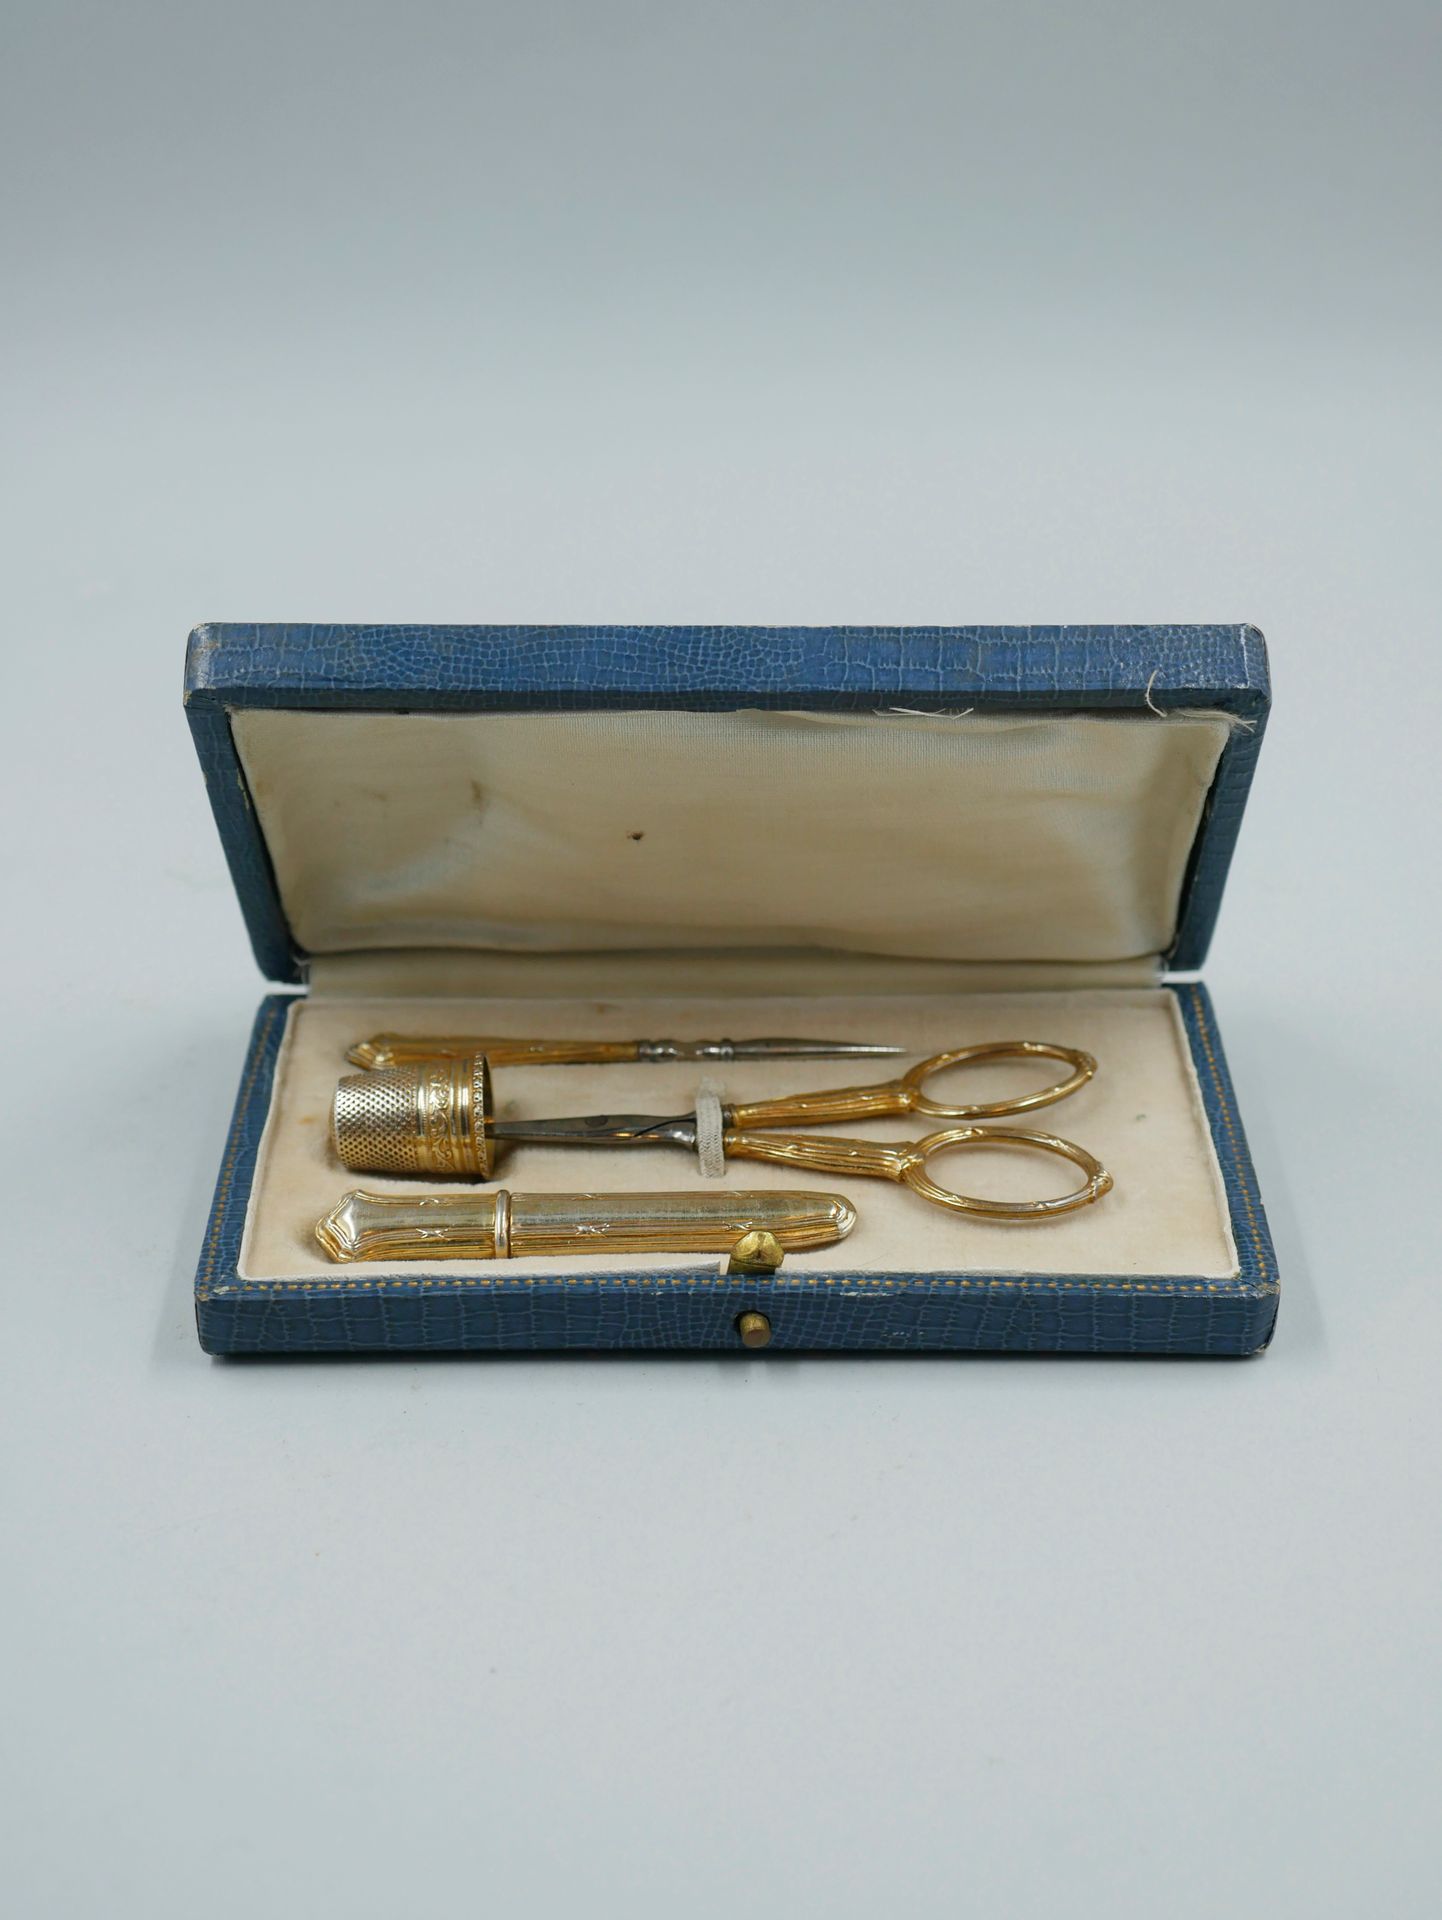 Null 银色和金属的缝纫工具箱。19世纪。PB : 15,90 克